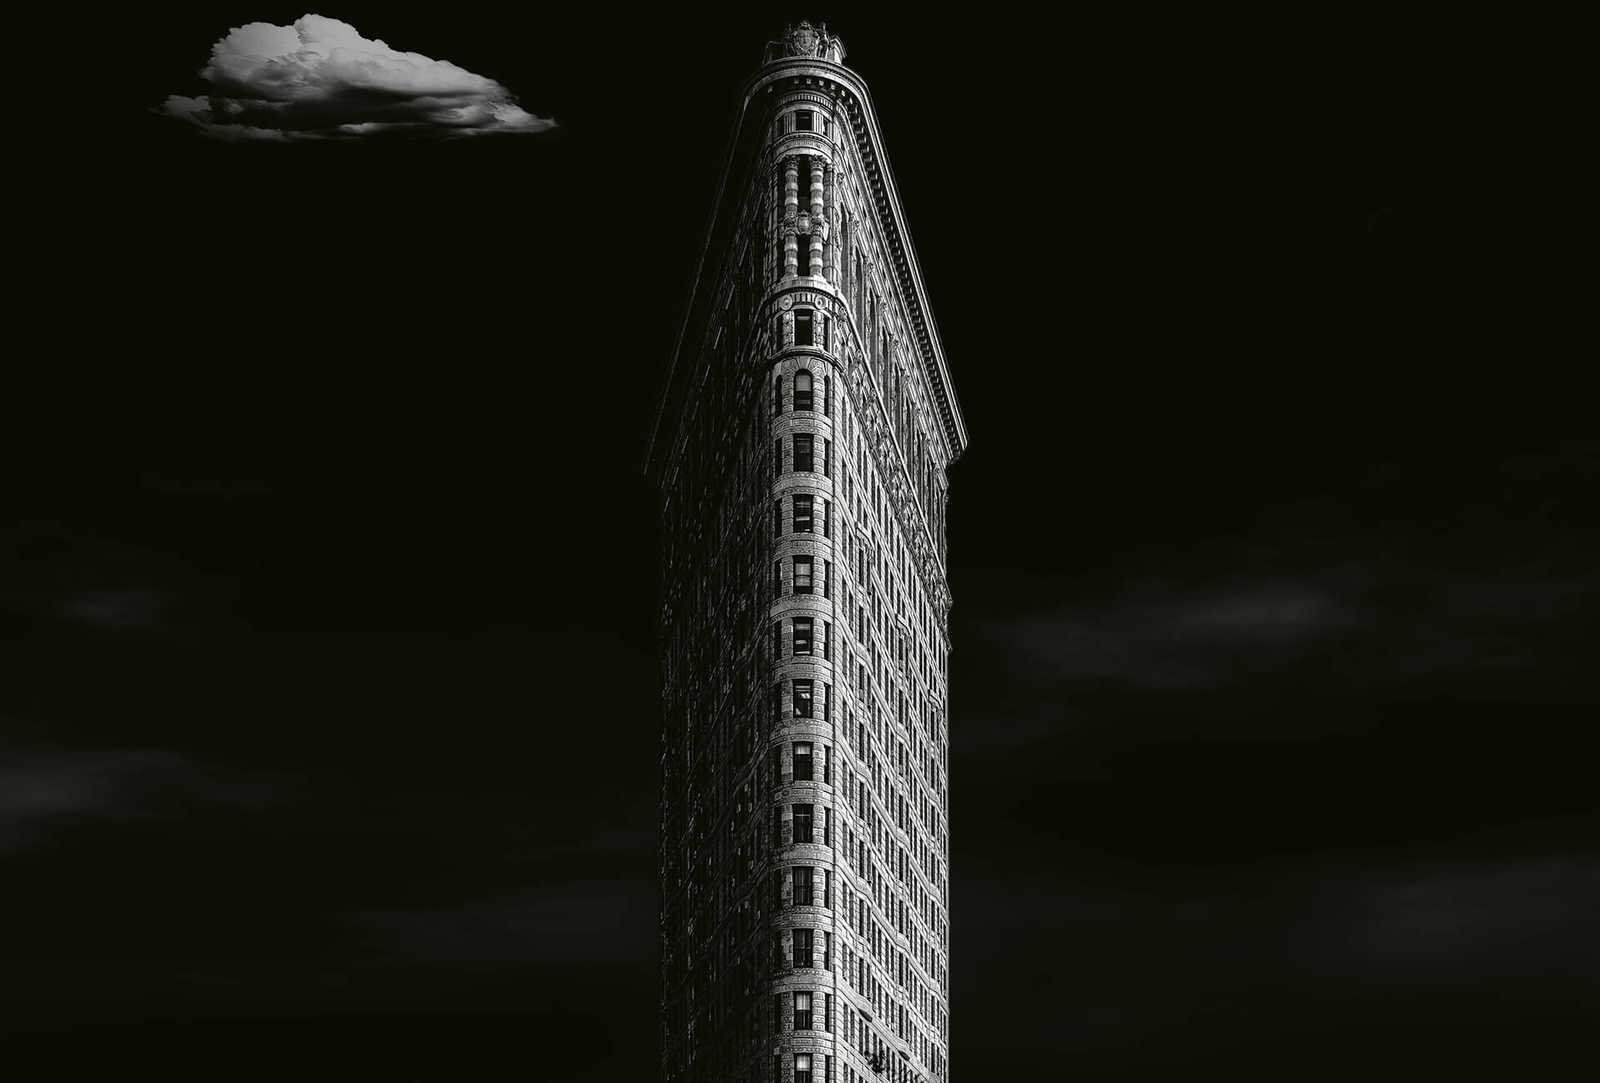         Fototapete Hochhaus in New York – Schwarz, Weiß, Grau
    